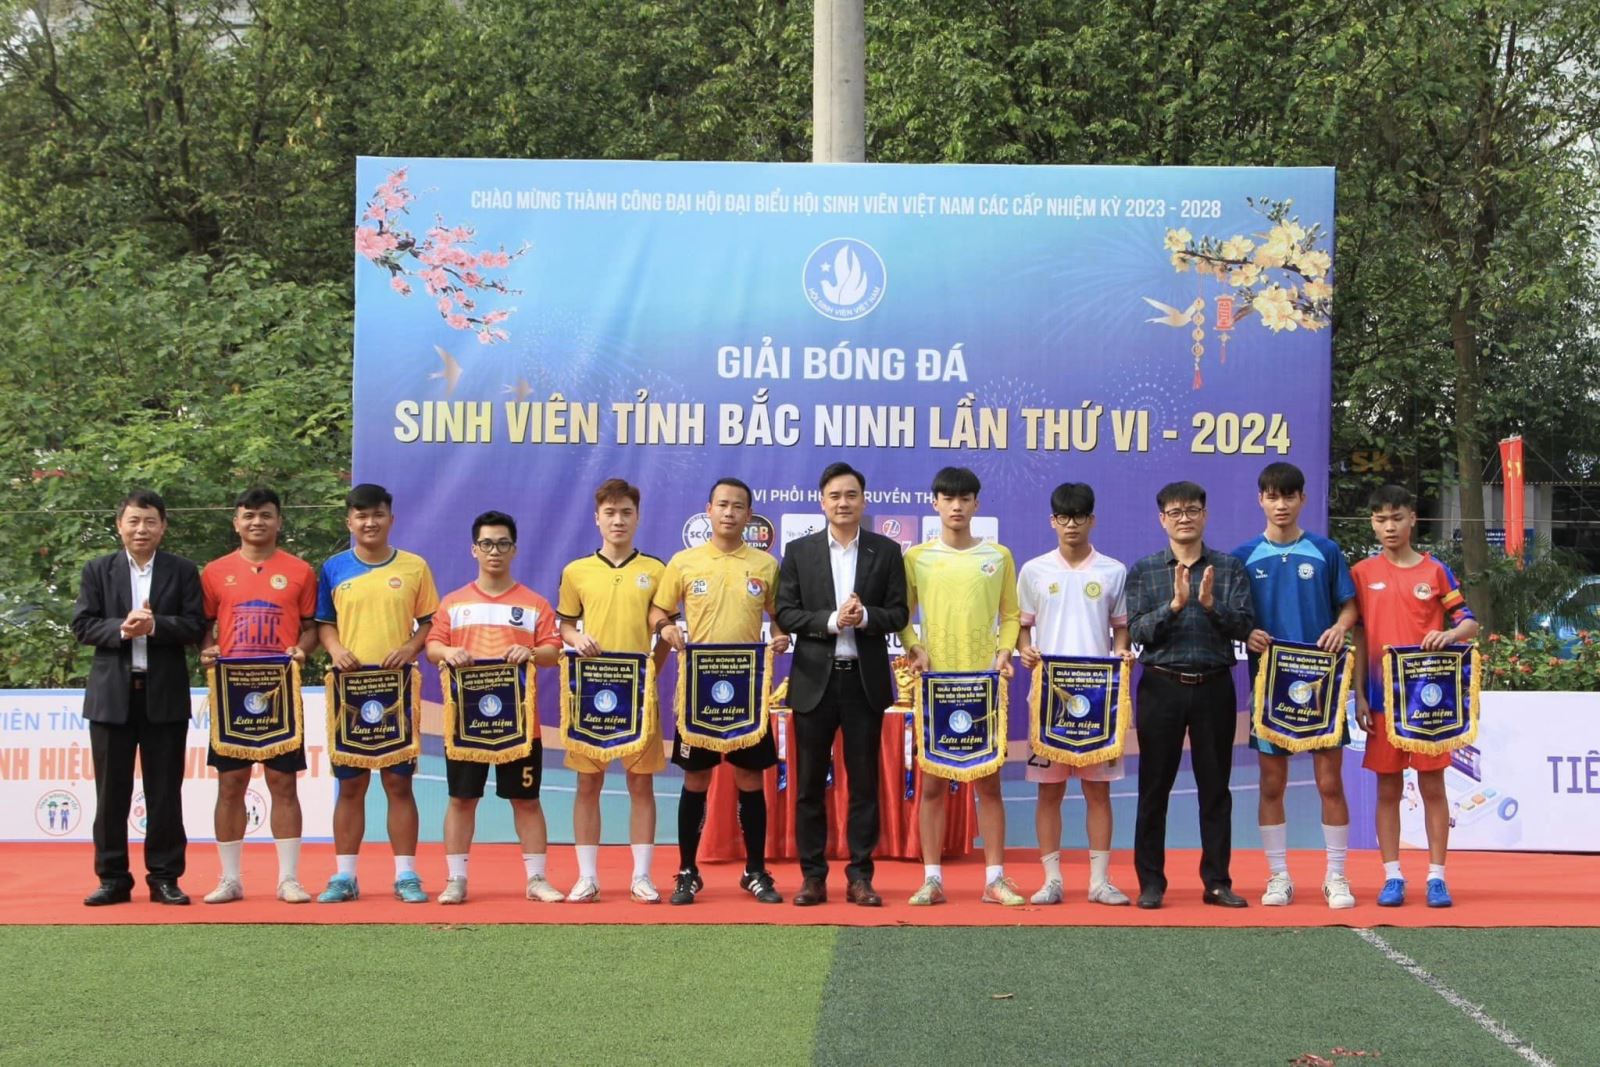 Khai mạc giải bóng đá sinh viên tỉnh Bắc Ninh lần thứ VI, năm 2024